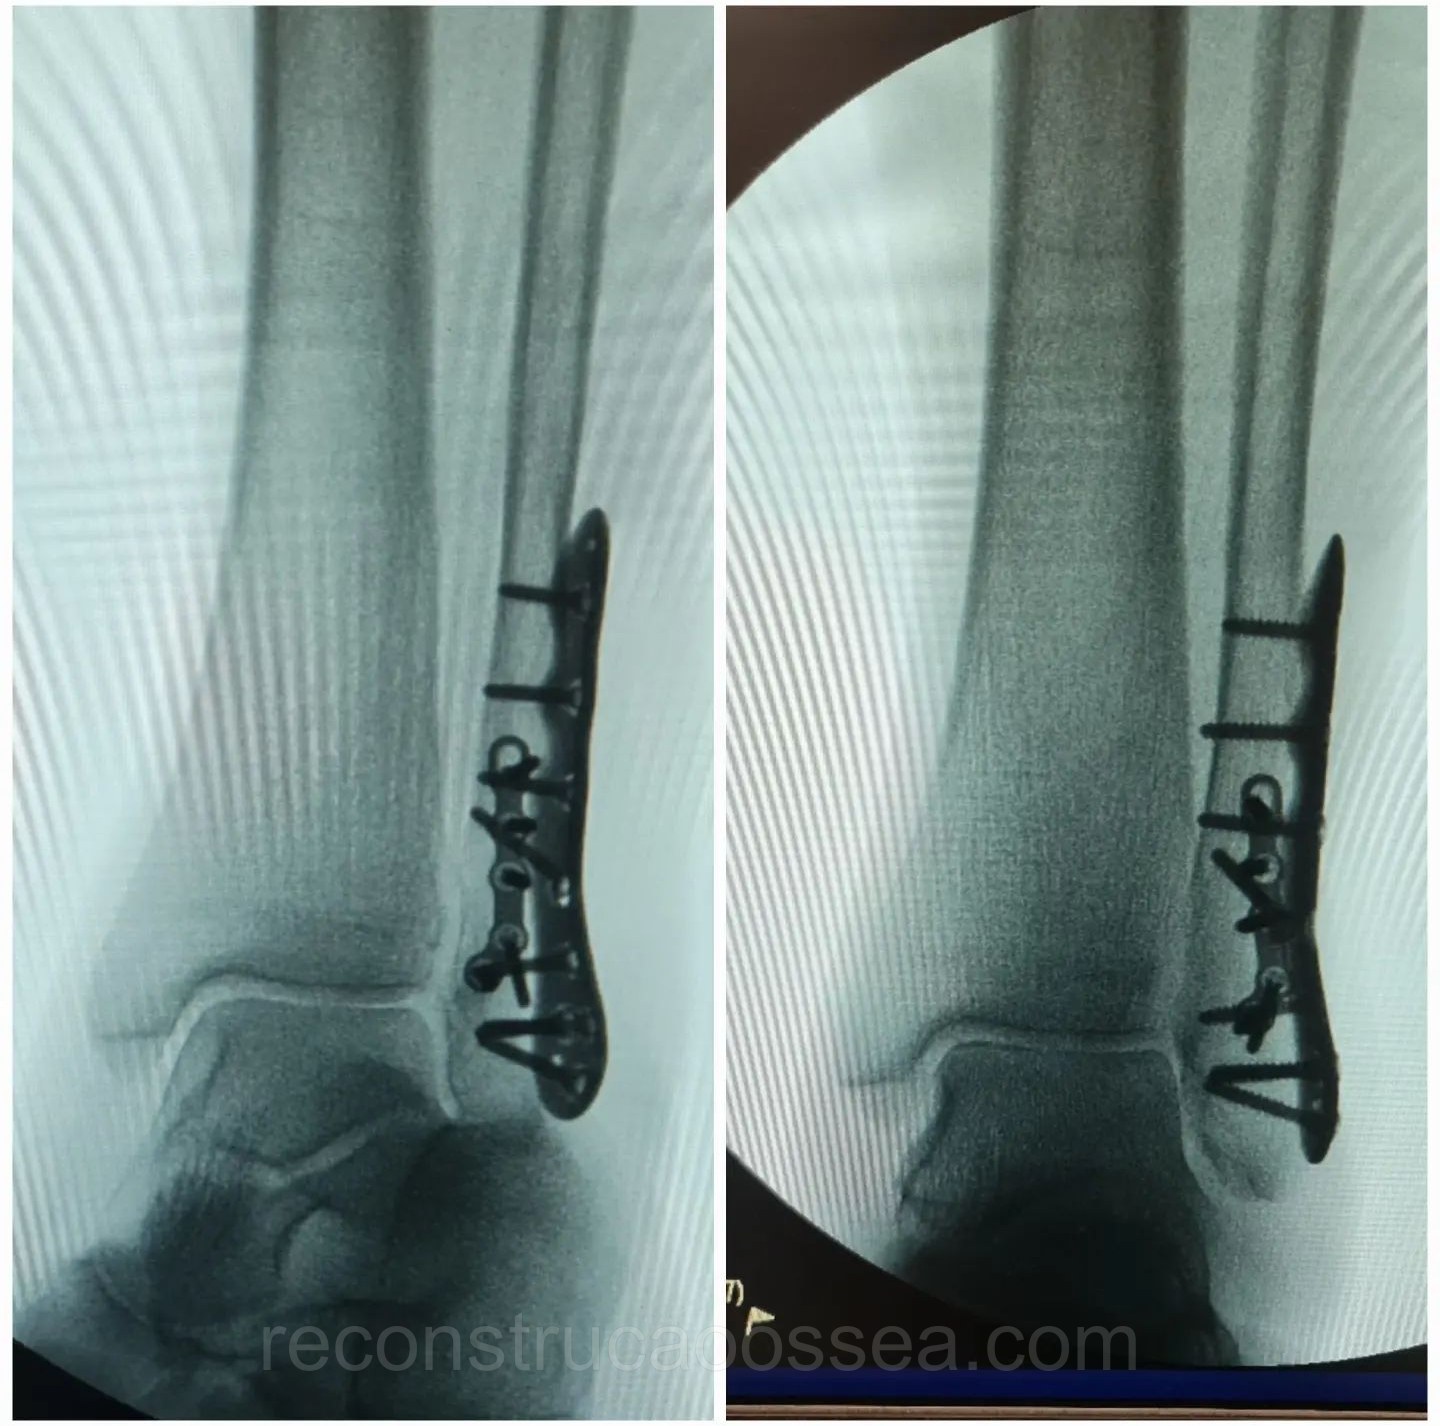 fratura-do-tornozelo-tratamento-cirurgico-22